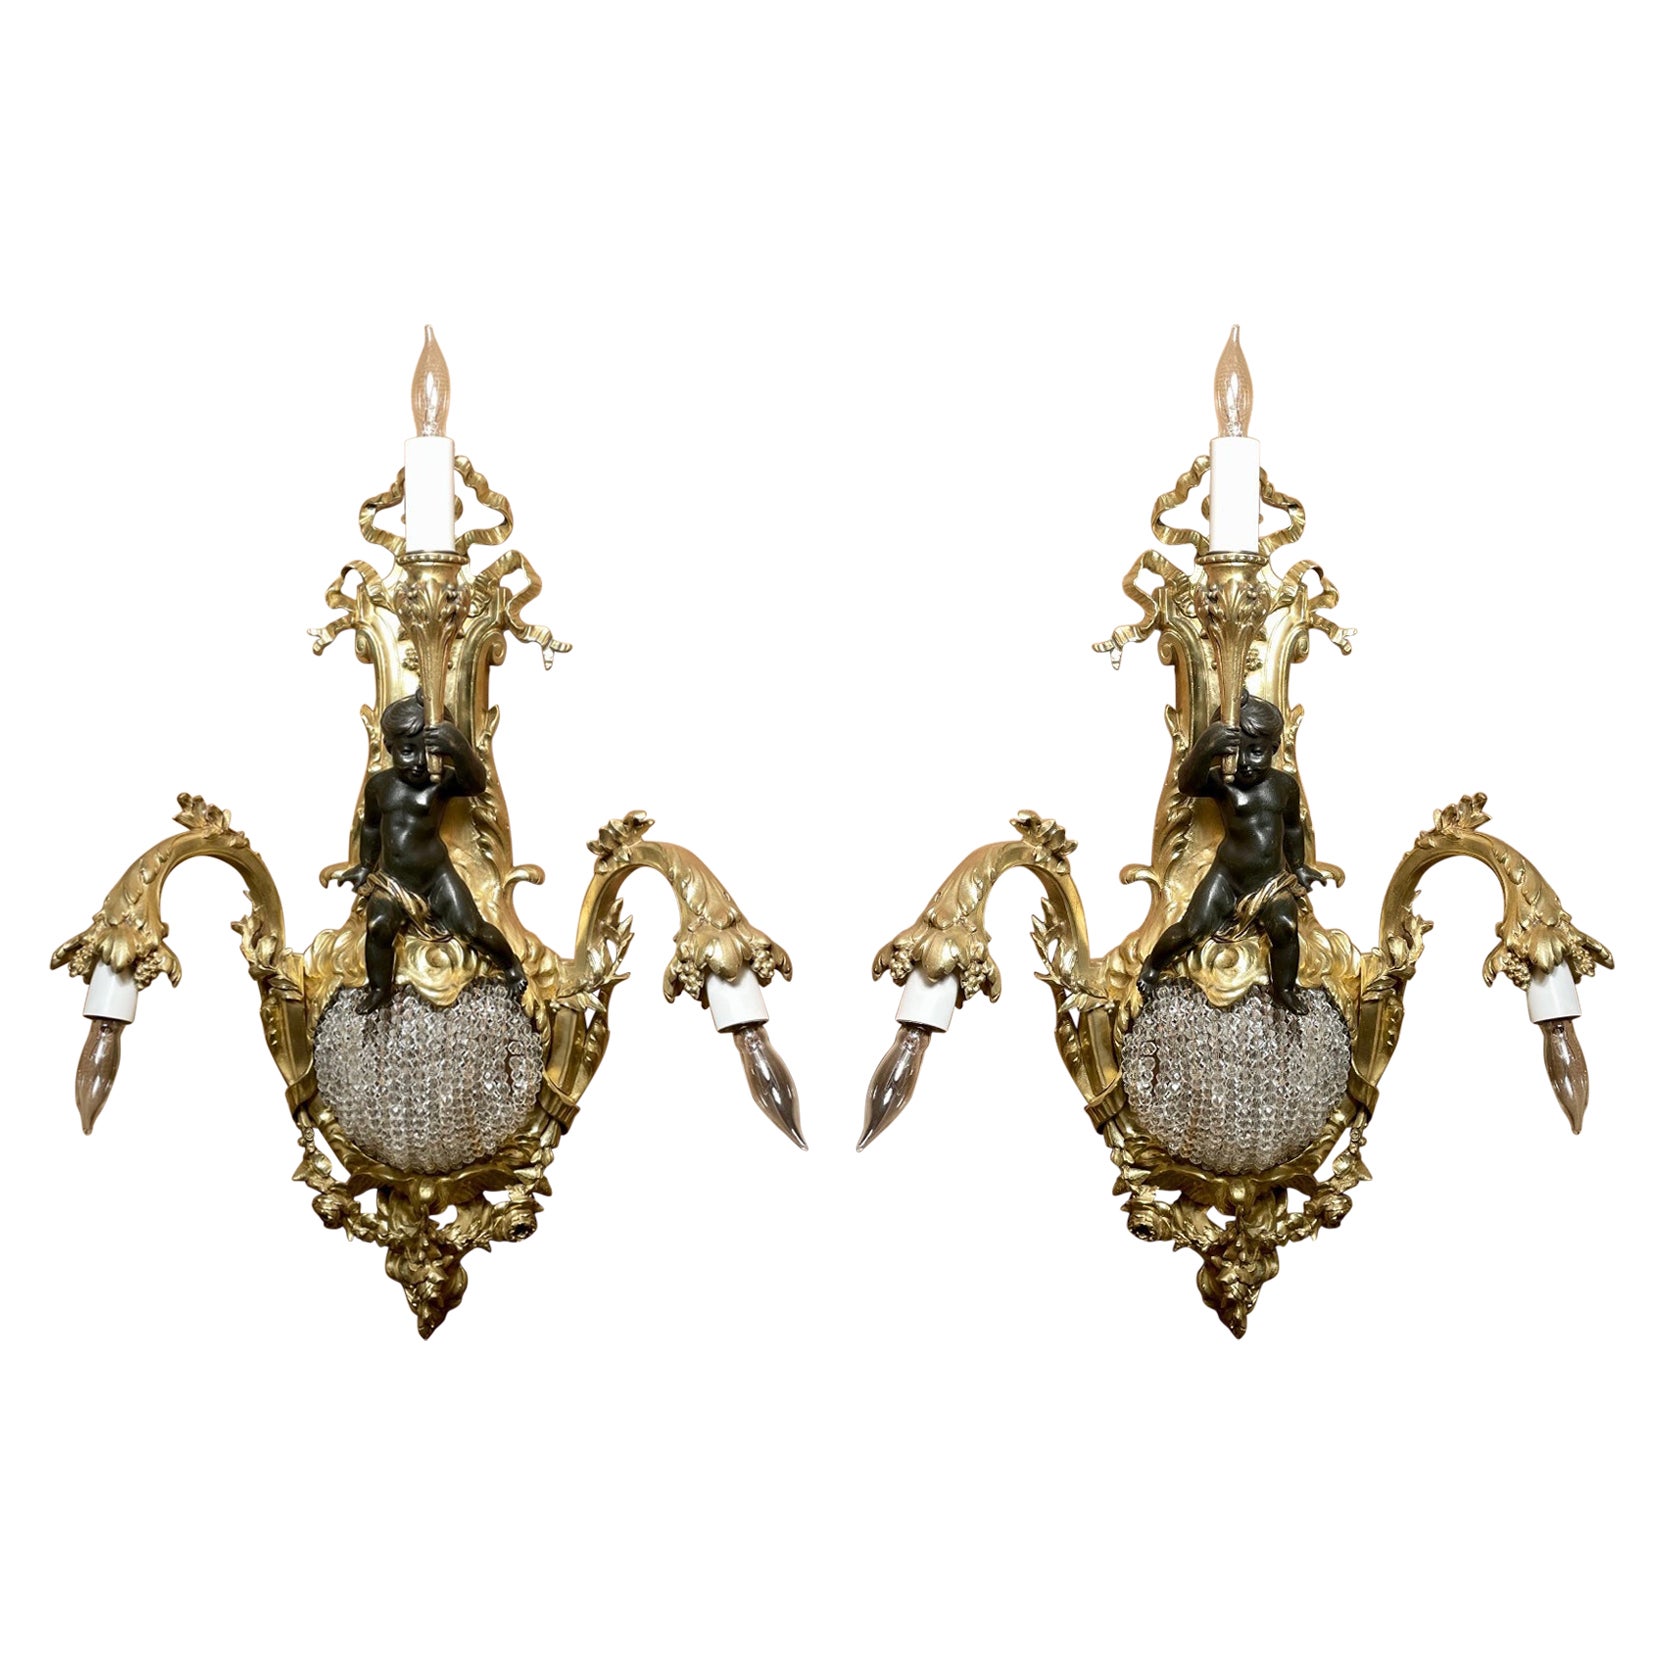 Pair Antique French Belle Époque Gold Bronze & Cut Crystal Sconces, Circa 1870's For Sale